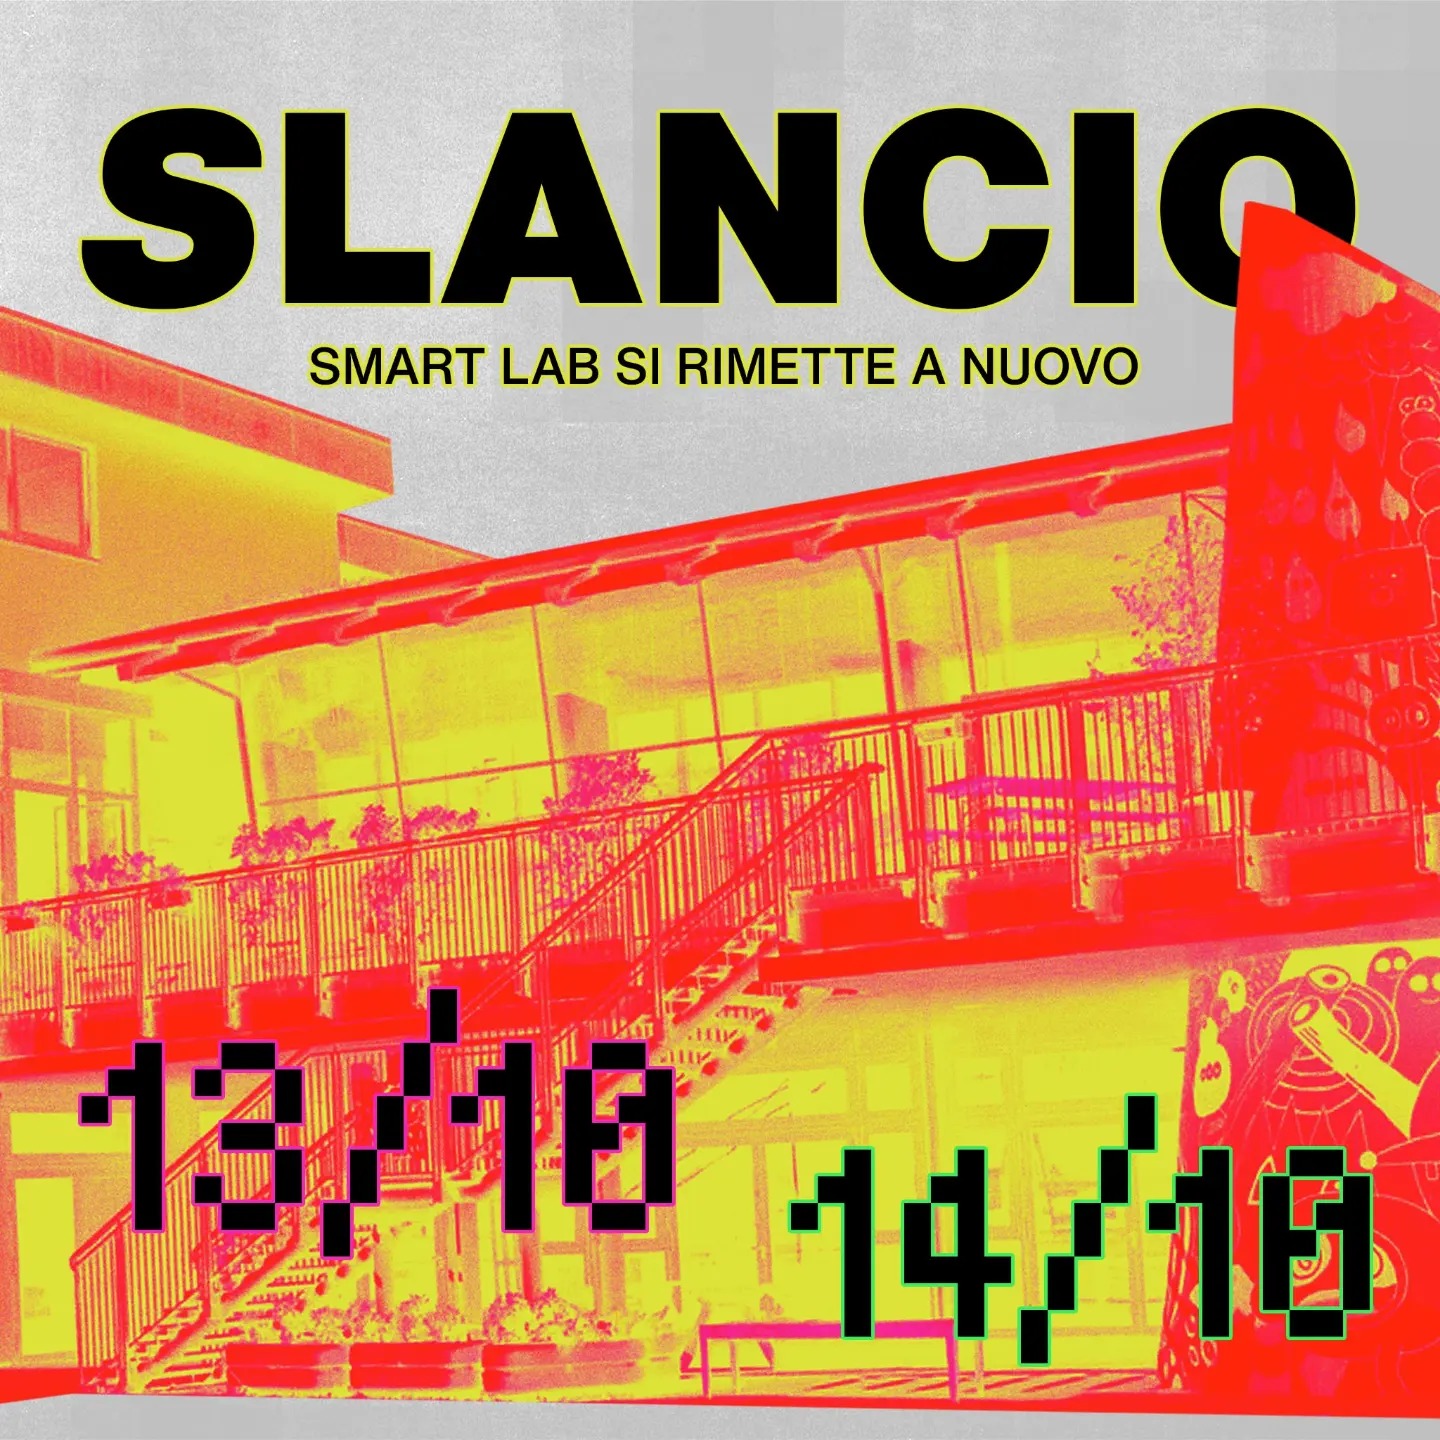 Slancio – Smart Lab si rimette a nuovo!